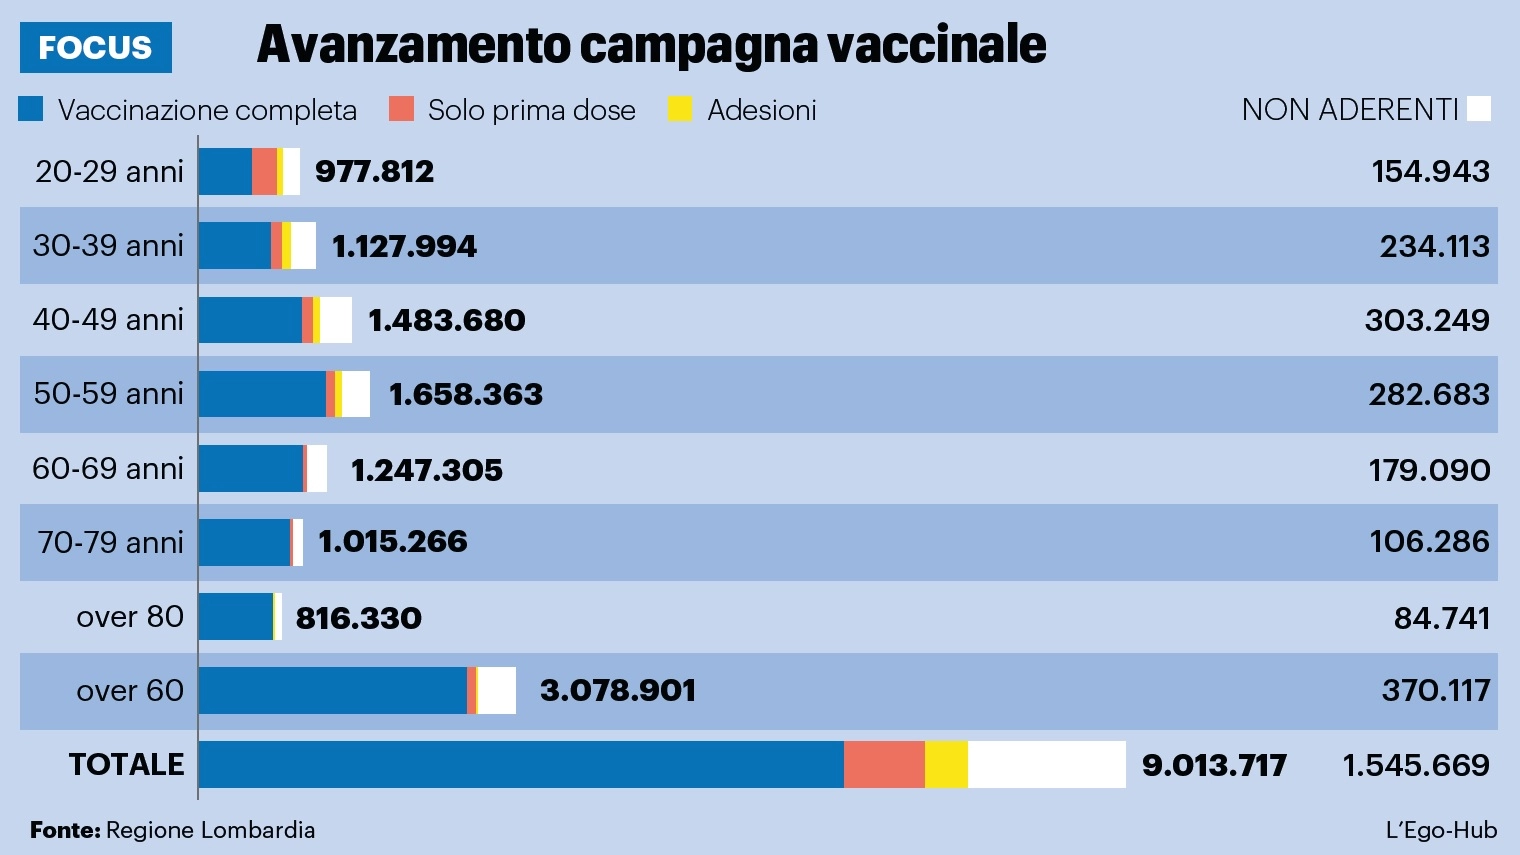 Avanzamento della campagna vaccinale in Lombardia